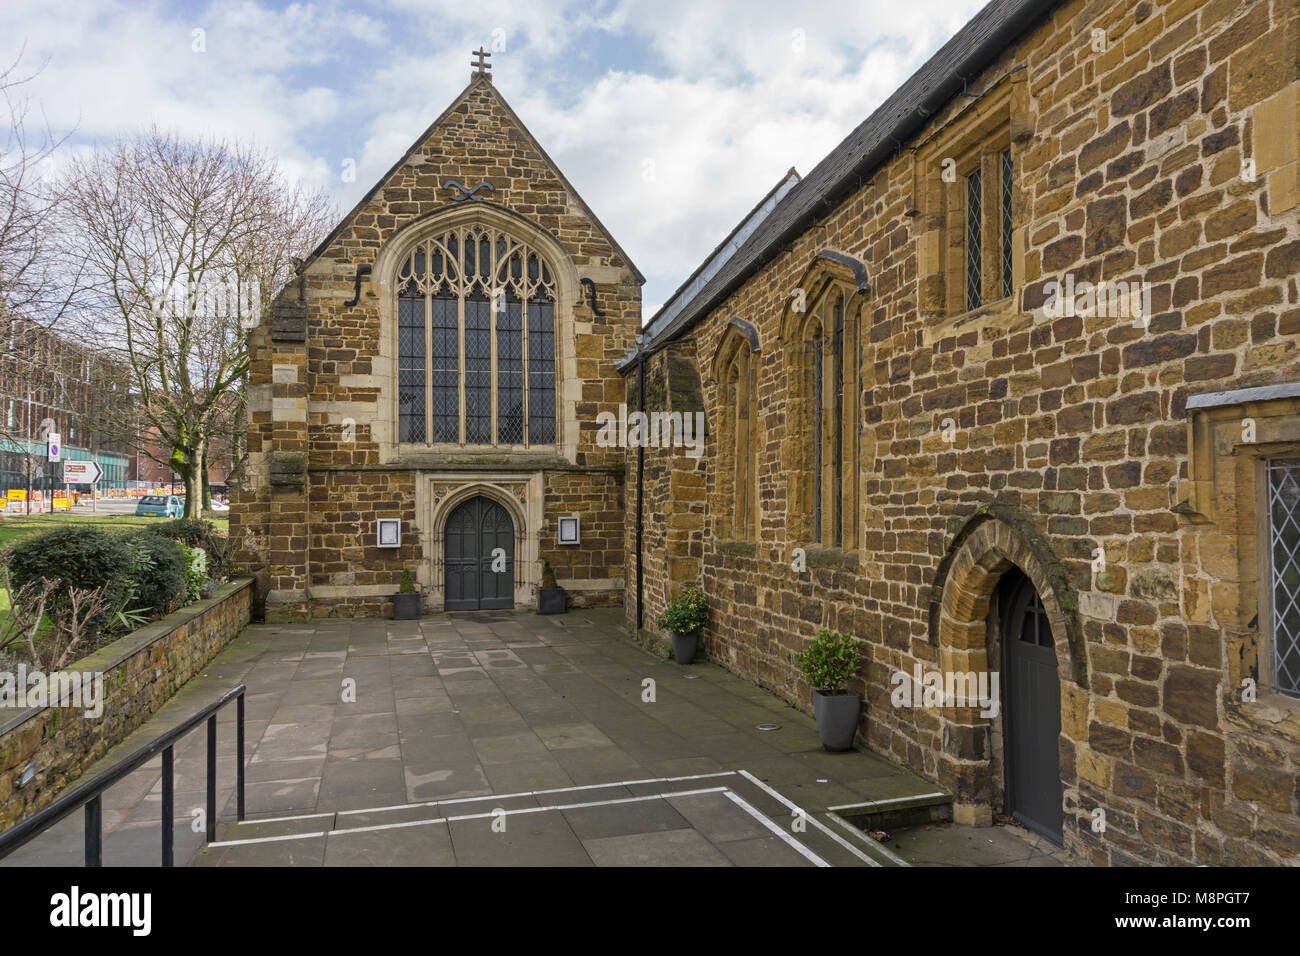 Im 12. Jahrhundert ehemalige Kirche von St. John's, der älteste Profanbau in Northampton, UK; jetzt ein feines Dining Restaurant als Kirche bekannt. Stockfoto